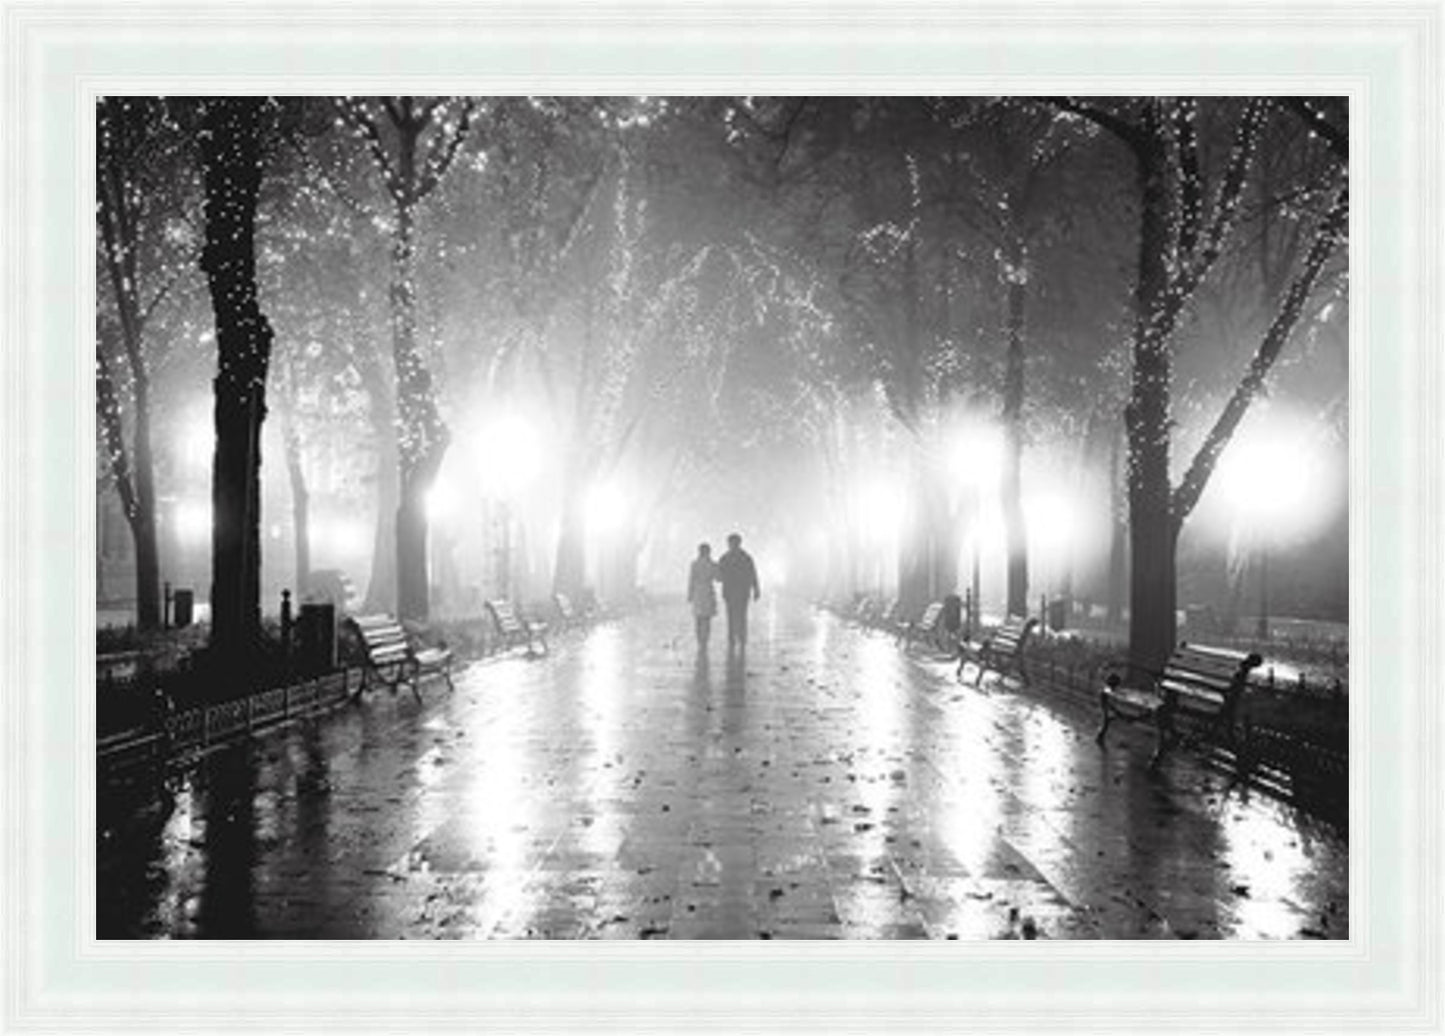 Lovers Walk - Black & White - Slim Frame